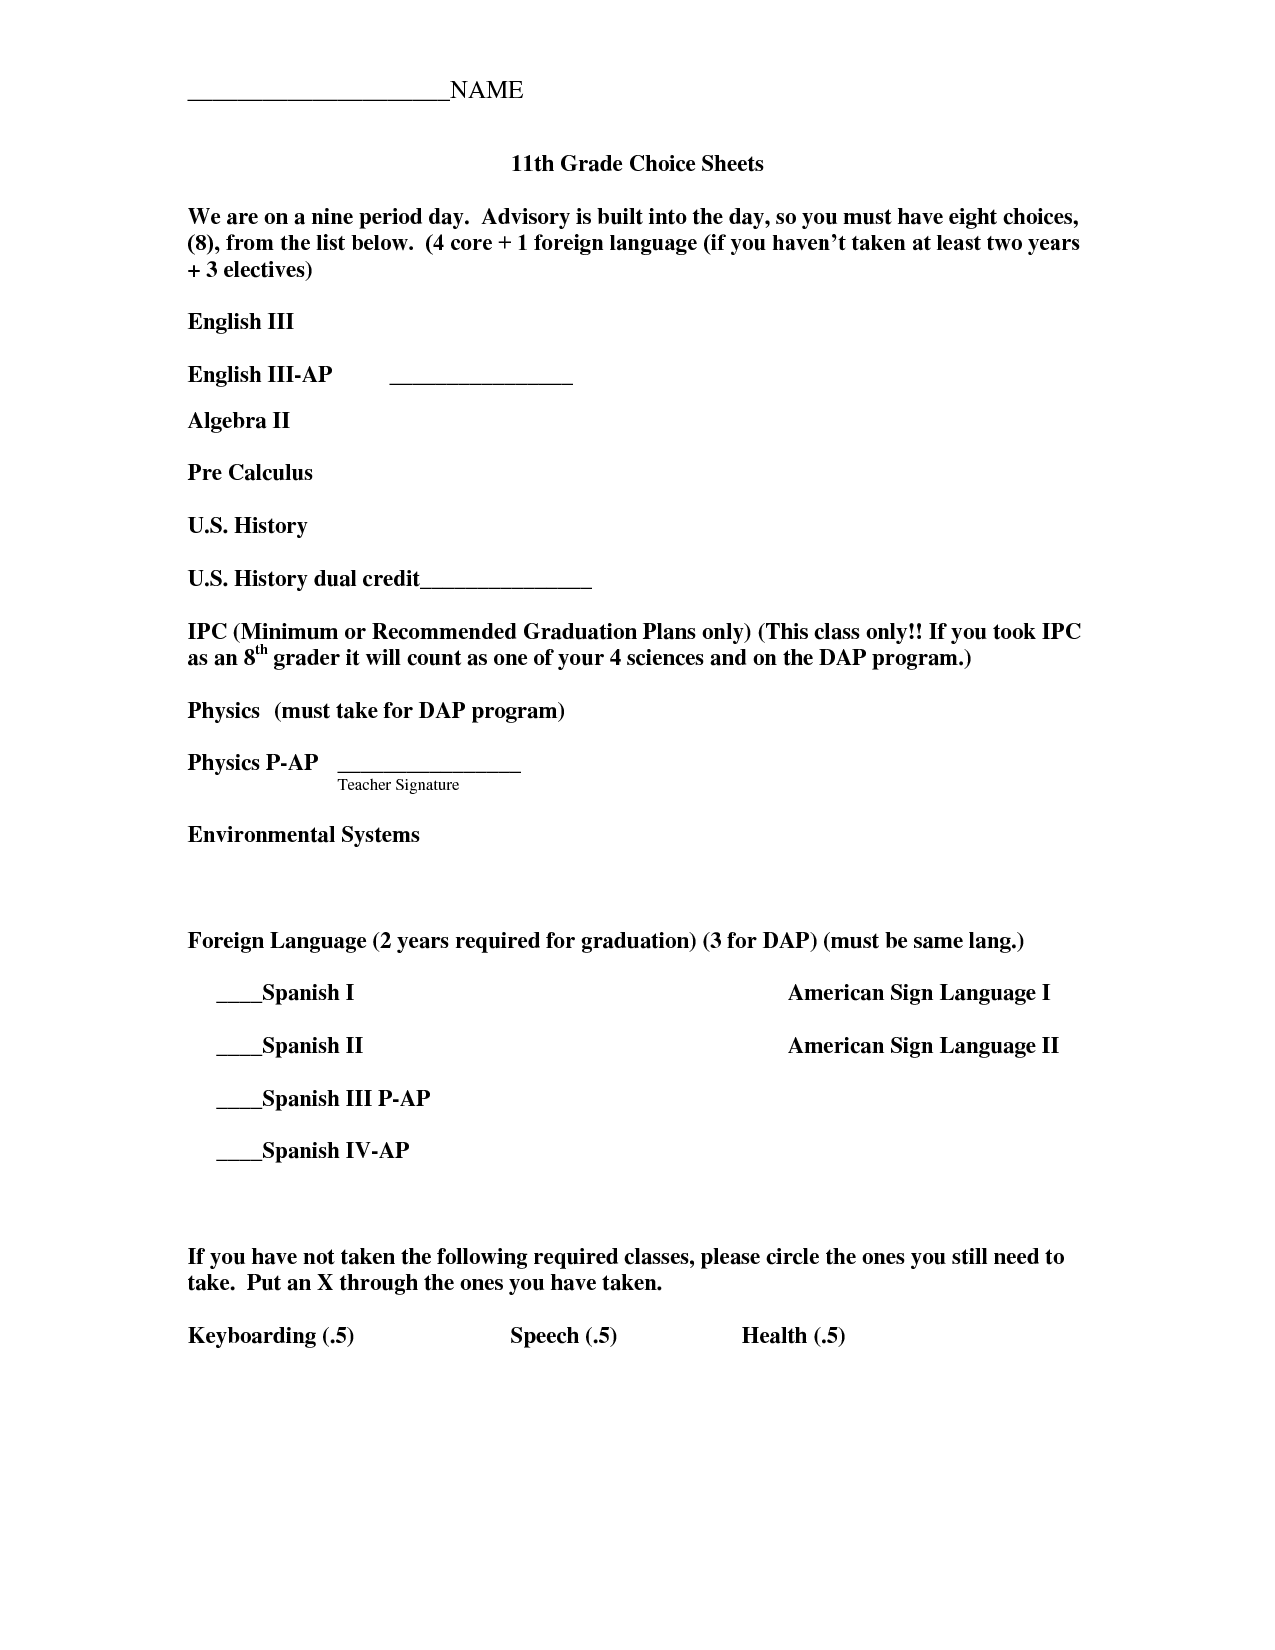 9th Grade Math Worksheets Printable